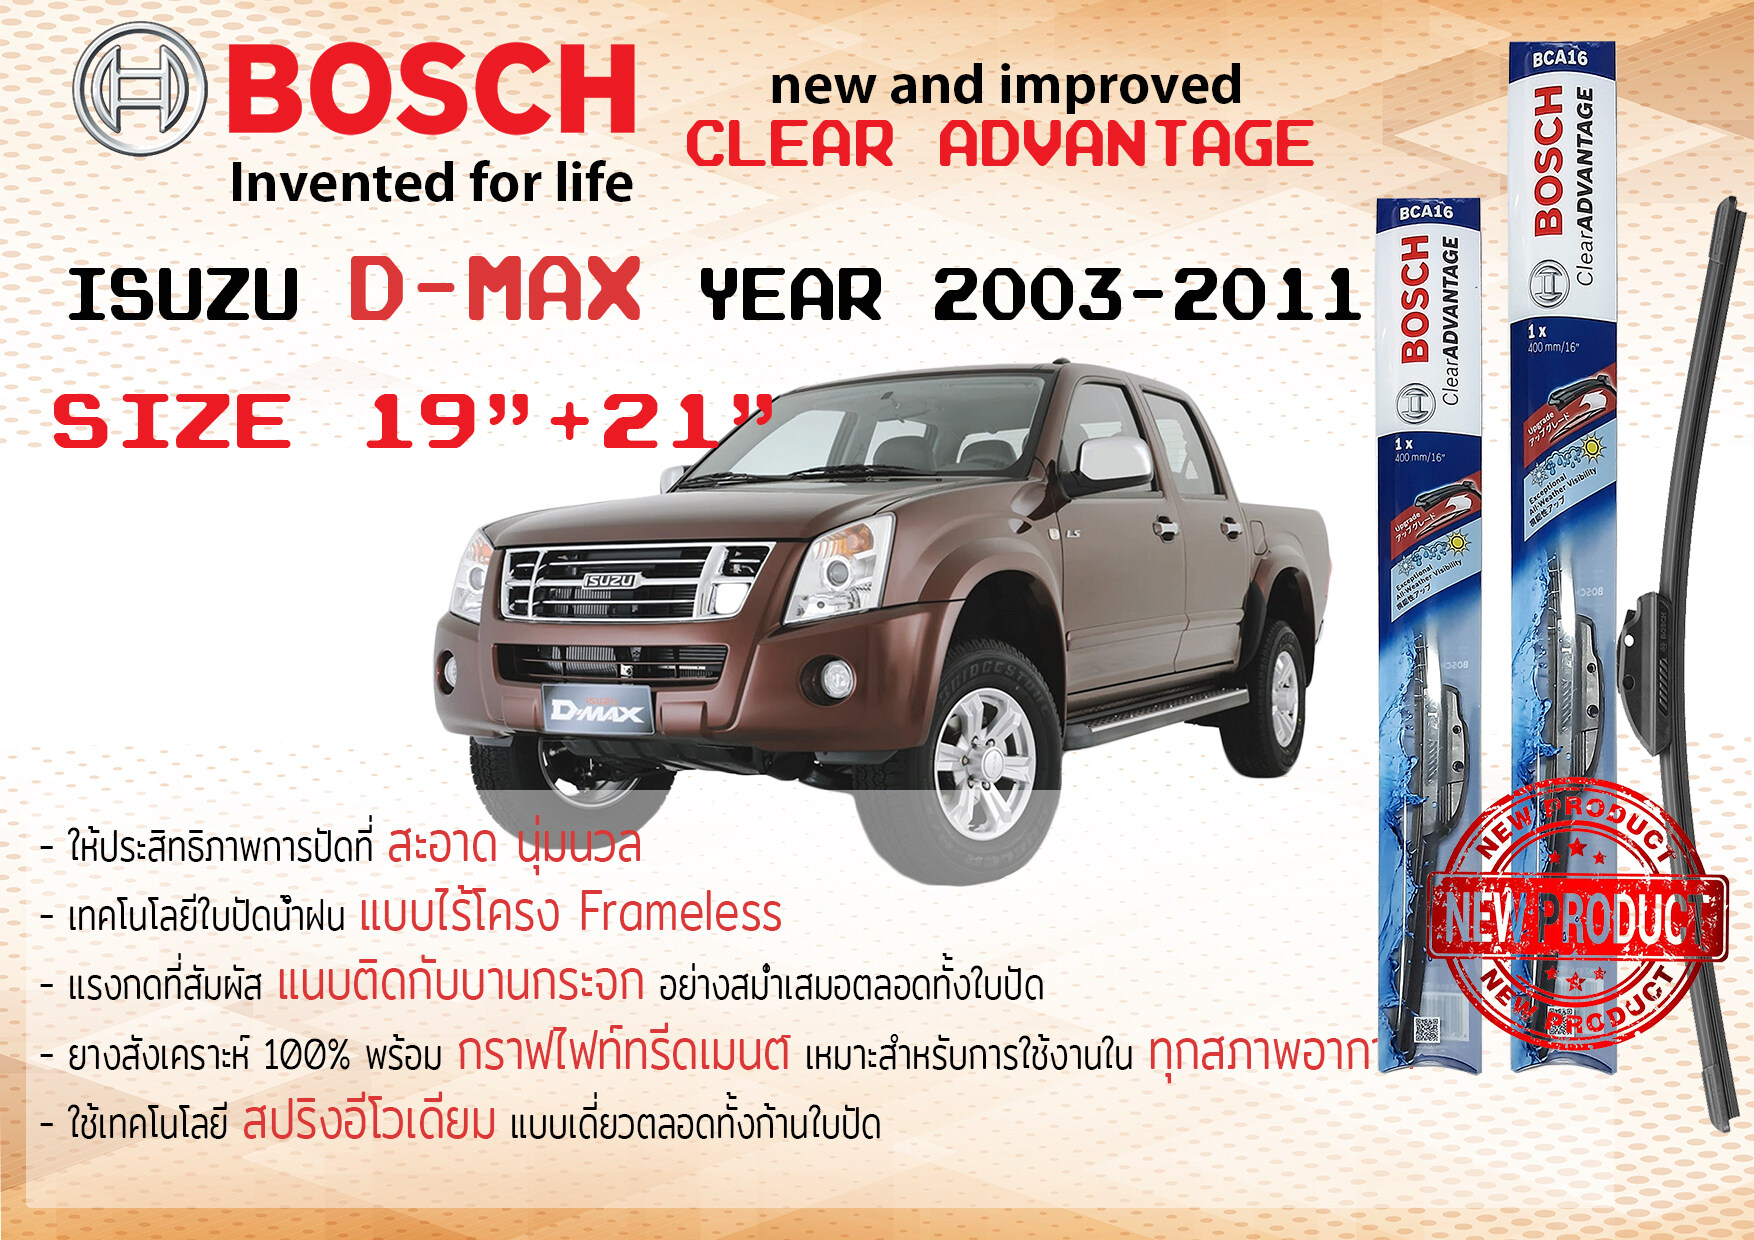 ใบปัดน้ำฝน คู่หน้า Bosch Clear Advantage frameless ก้านอ่อน ขนาด 19”+21” สำหรับรถ Isuzu D-Max,DMax ปี 2003-2011 ปี 03,04,05,06,07,08,09,10,11 อีซูซุ ดีแม็กซ์ ดีแม๊กซ์ ทนแสง UV